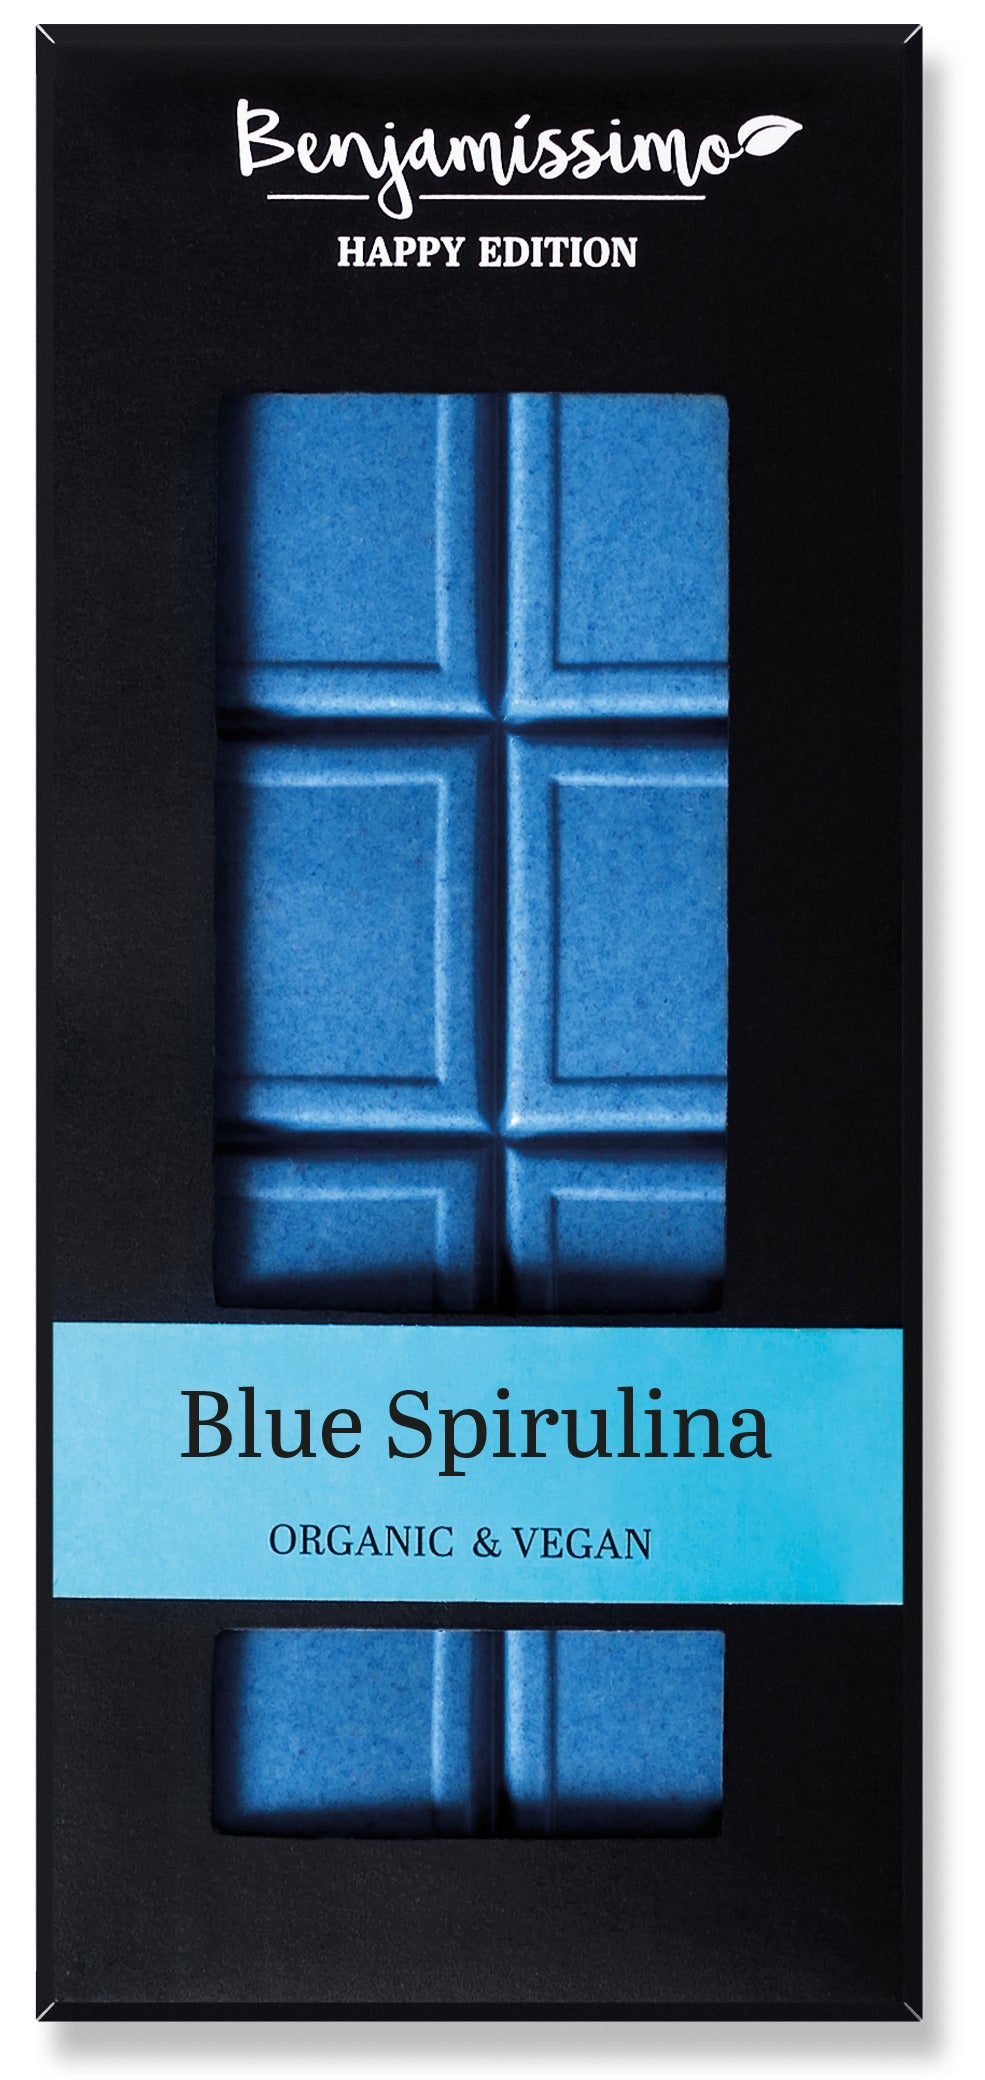 Ciocolata cu spirulina albastra, bio, 60g, benjamissimo